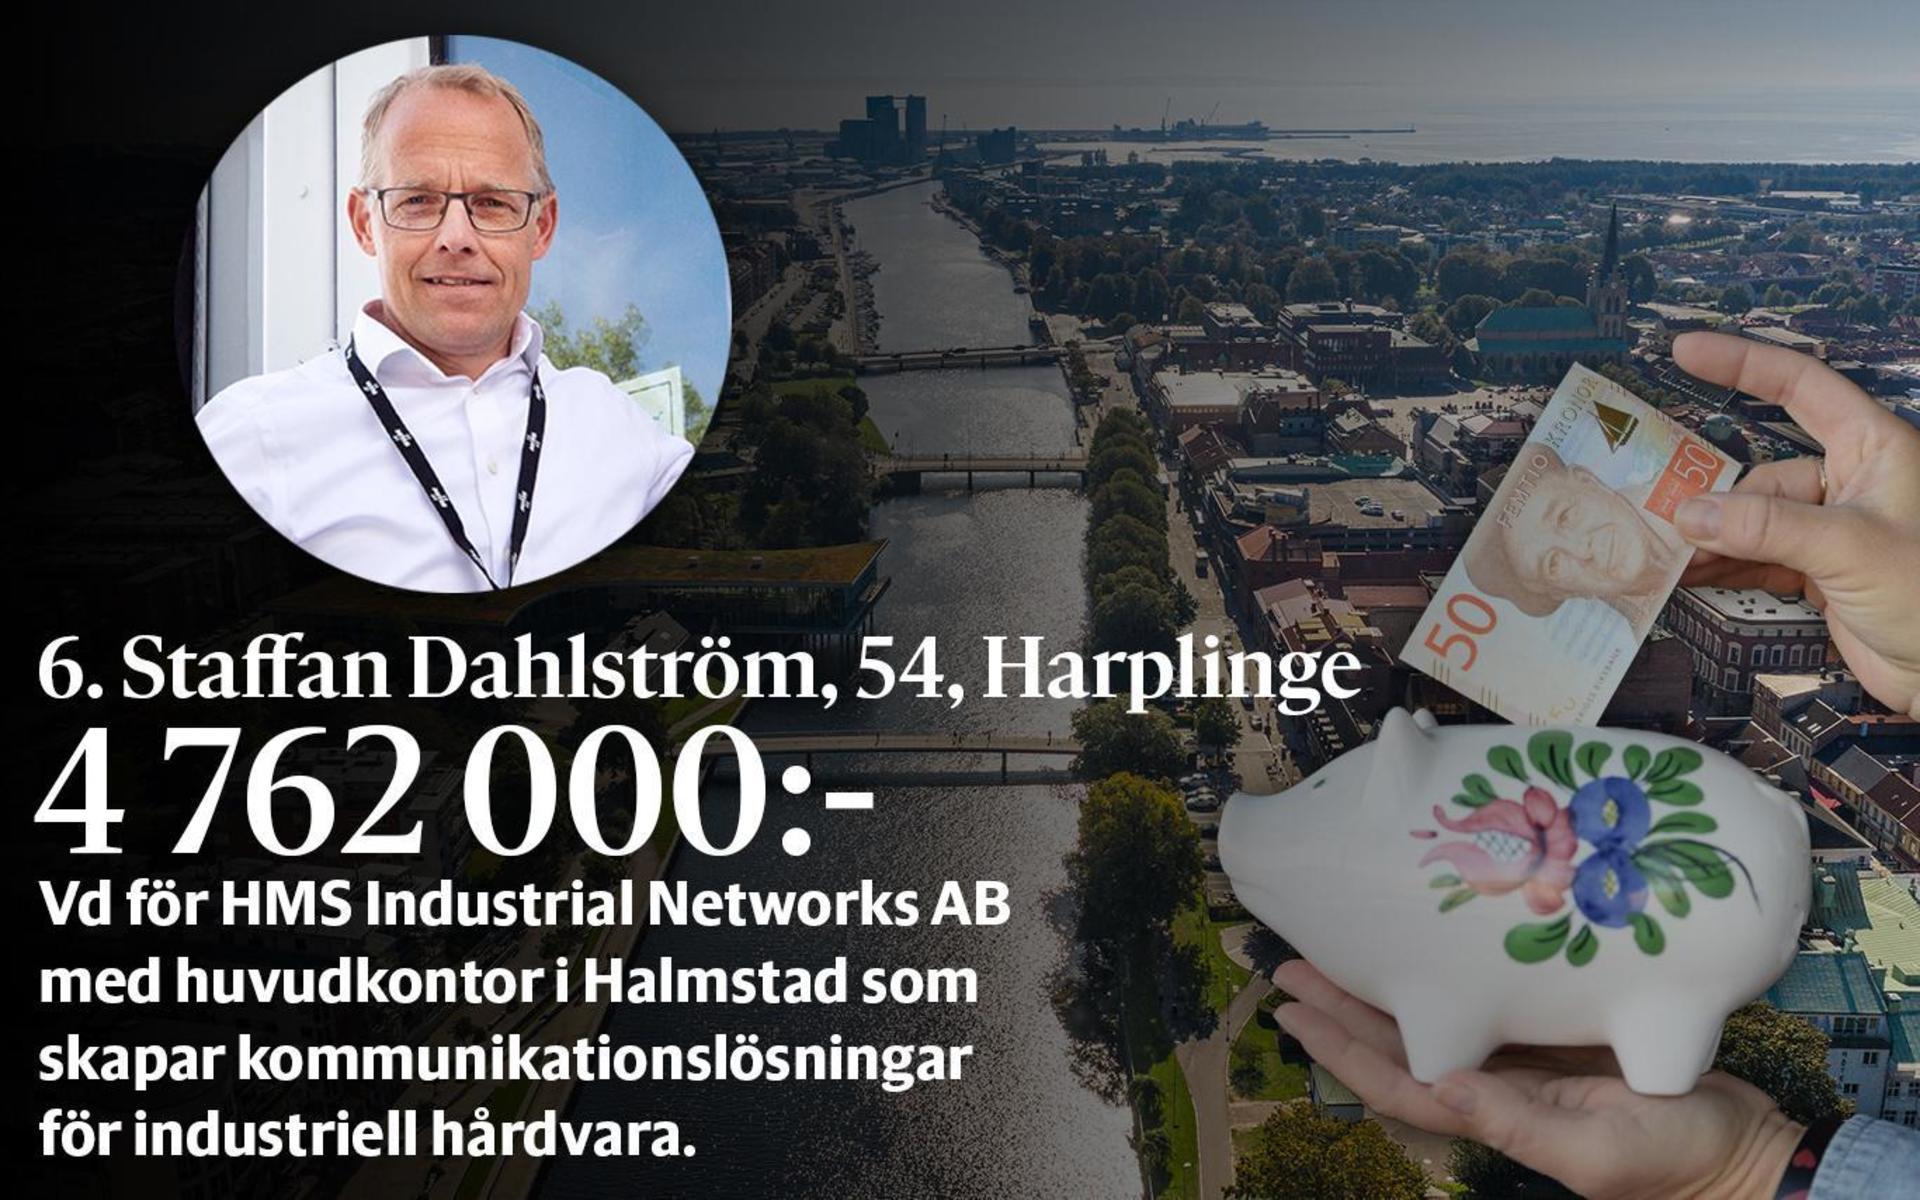 6. Staffan Dahlström, fastställd förvärvsinkomst på 4 762 000 kronor och inkomst av kapital på 21 271 020 kronor placerar honom på plats 5 i den totala inkomstligan i Halmstad.